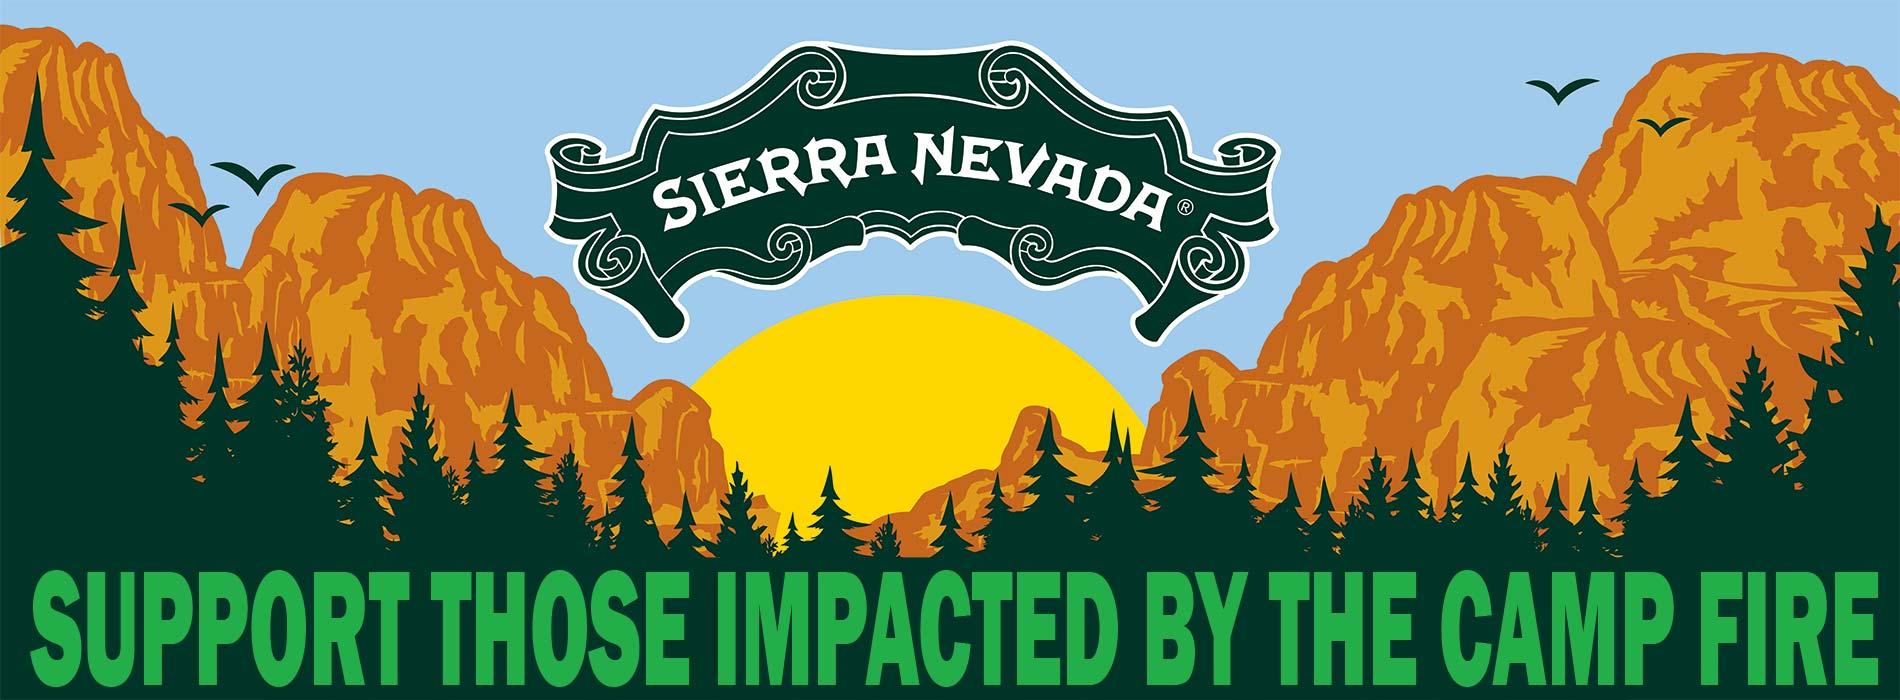 Sierra Nevada Brewery Logo - Sierra Nevada Brewing Co